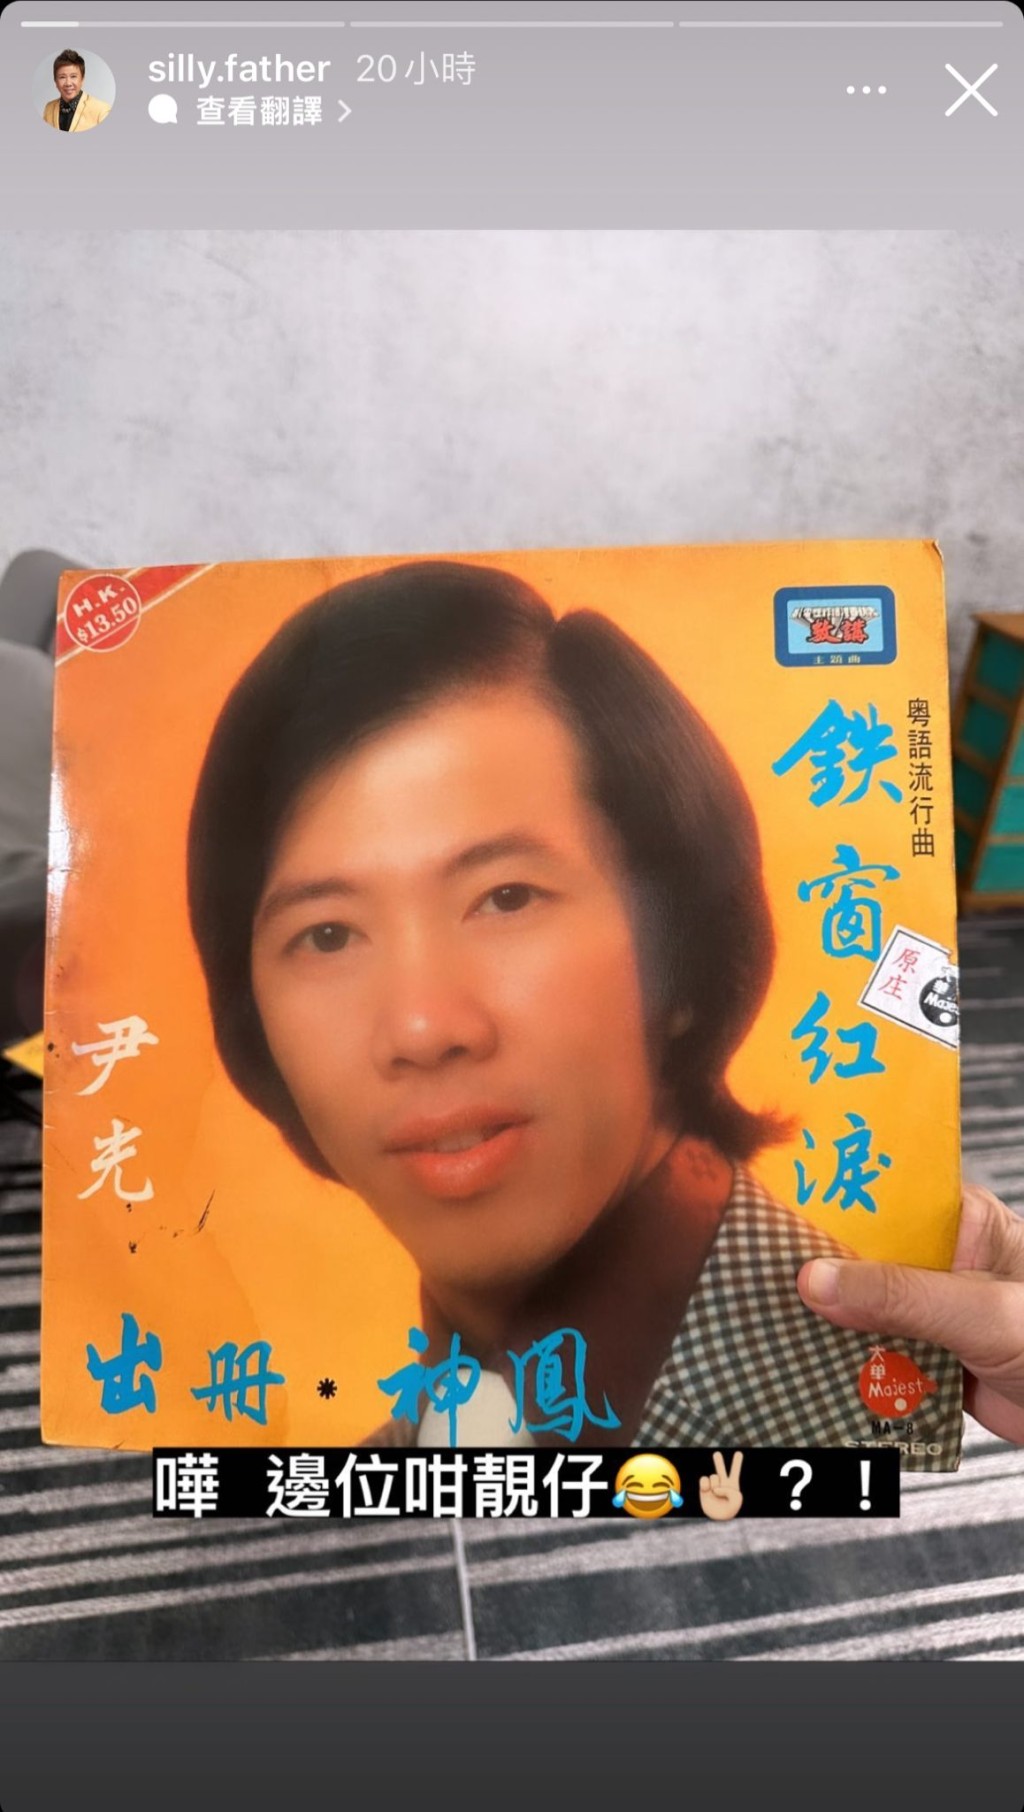 尹光晒出1977年推出的《铁窗红泪、出册、神凤》黑胶碟封面，他笑指：「哗！边位咁靓仔？！」